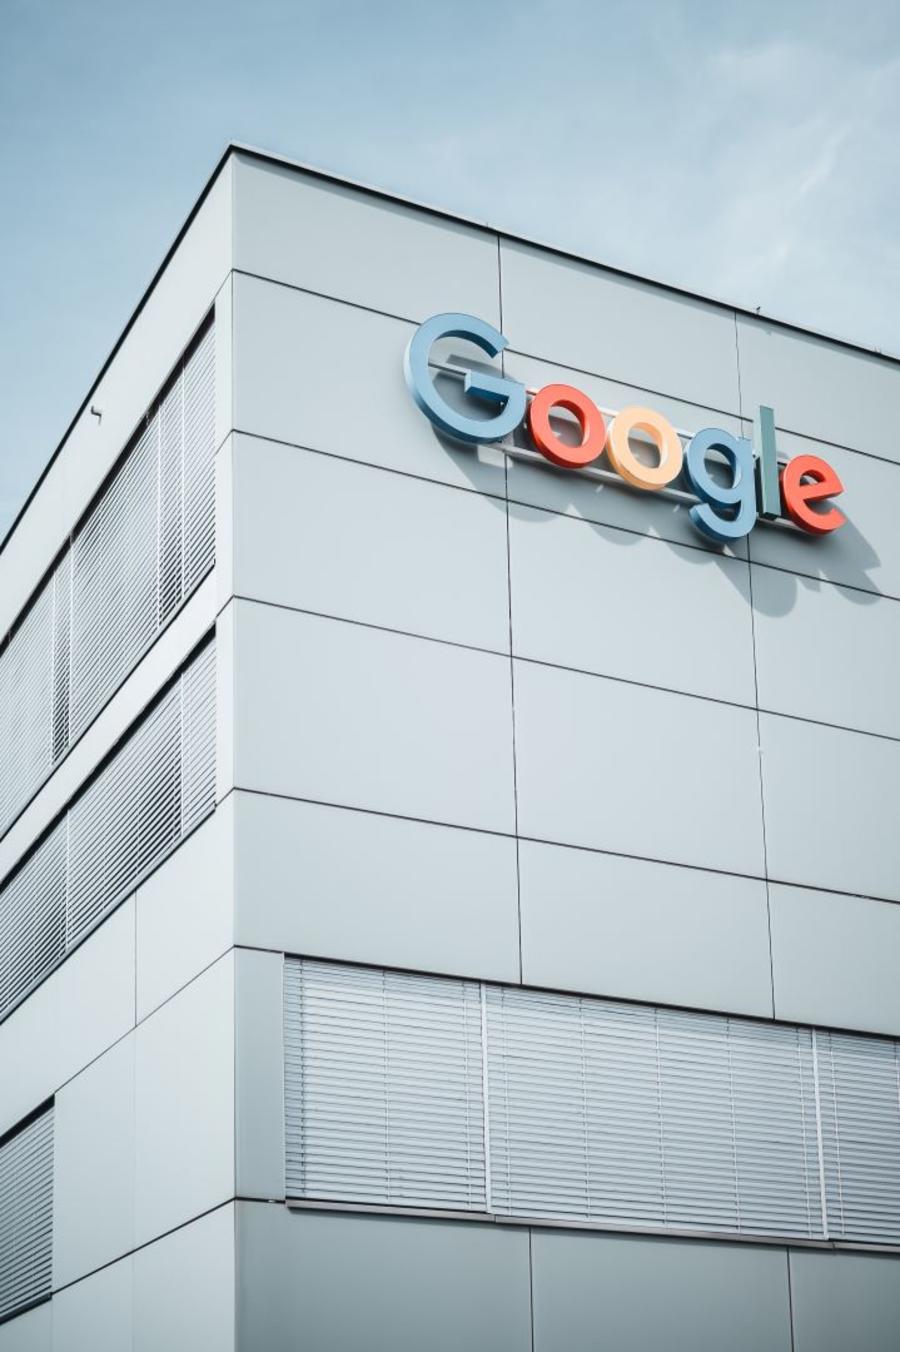 جوجل تطلق منصة محادثة الذكاء الاصطناعي "بارد" في 180 دولة